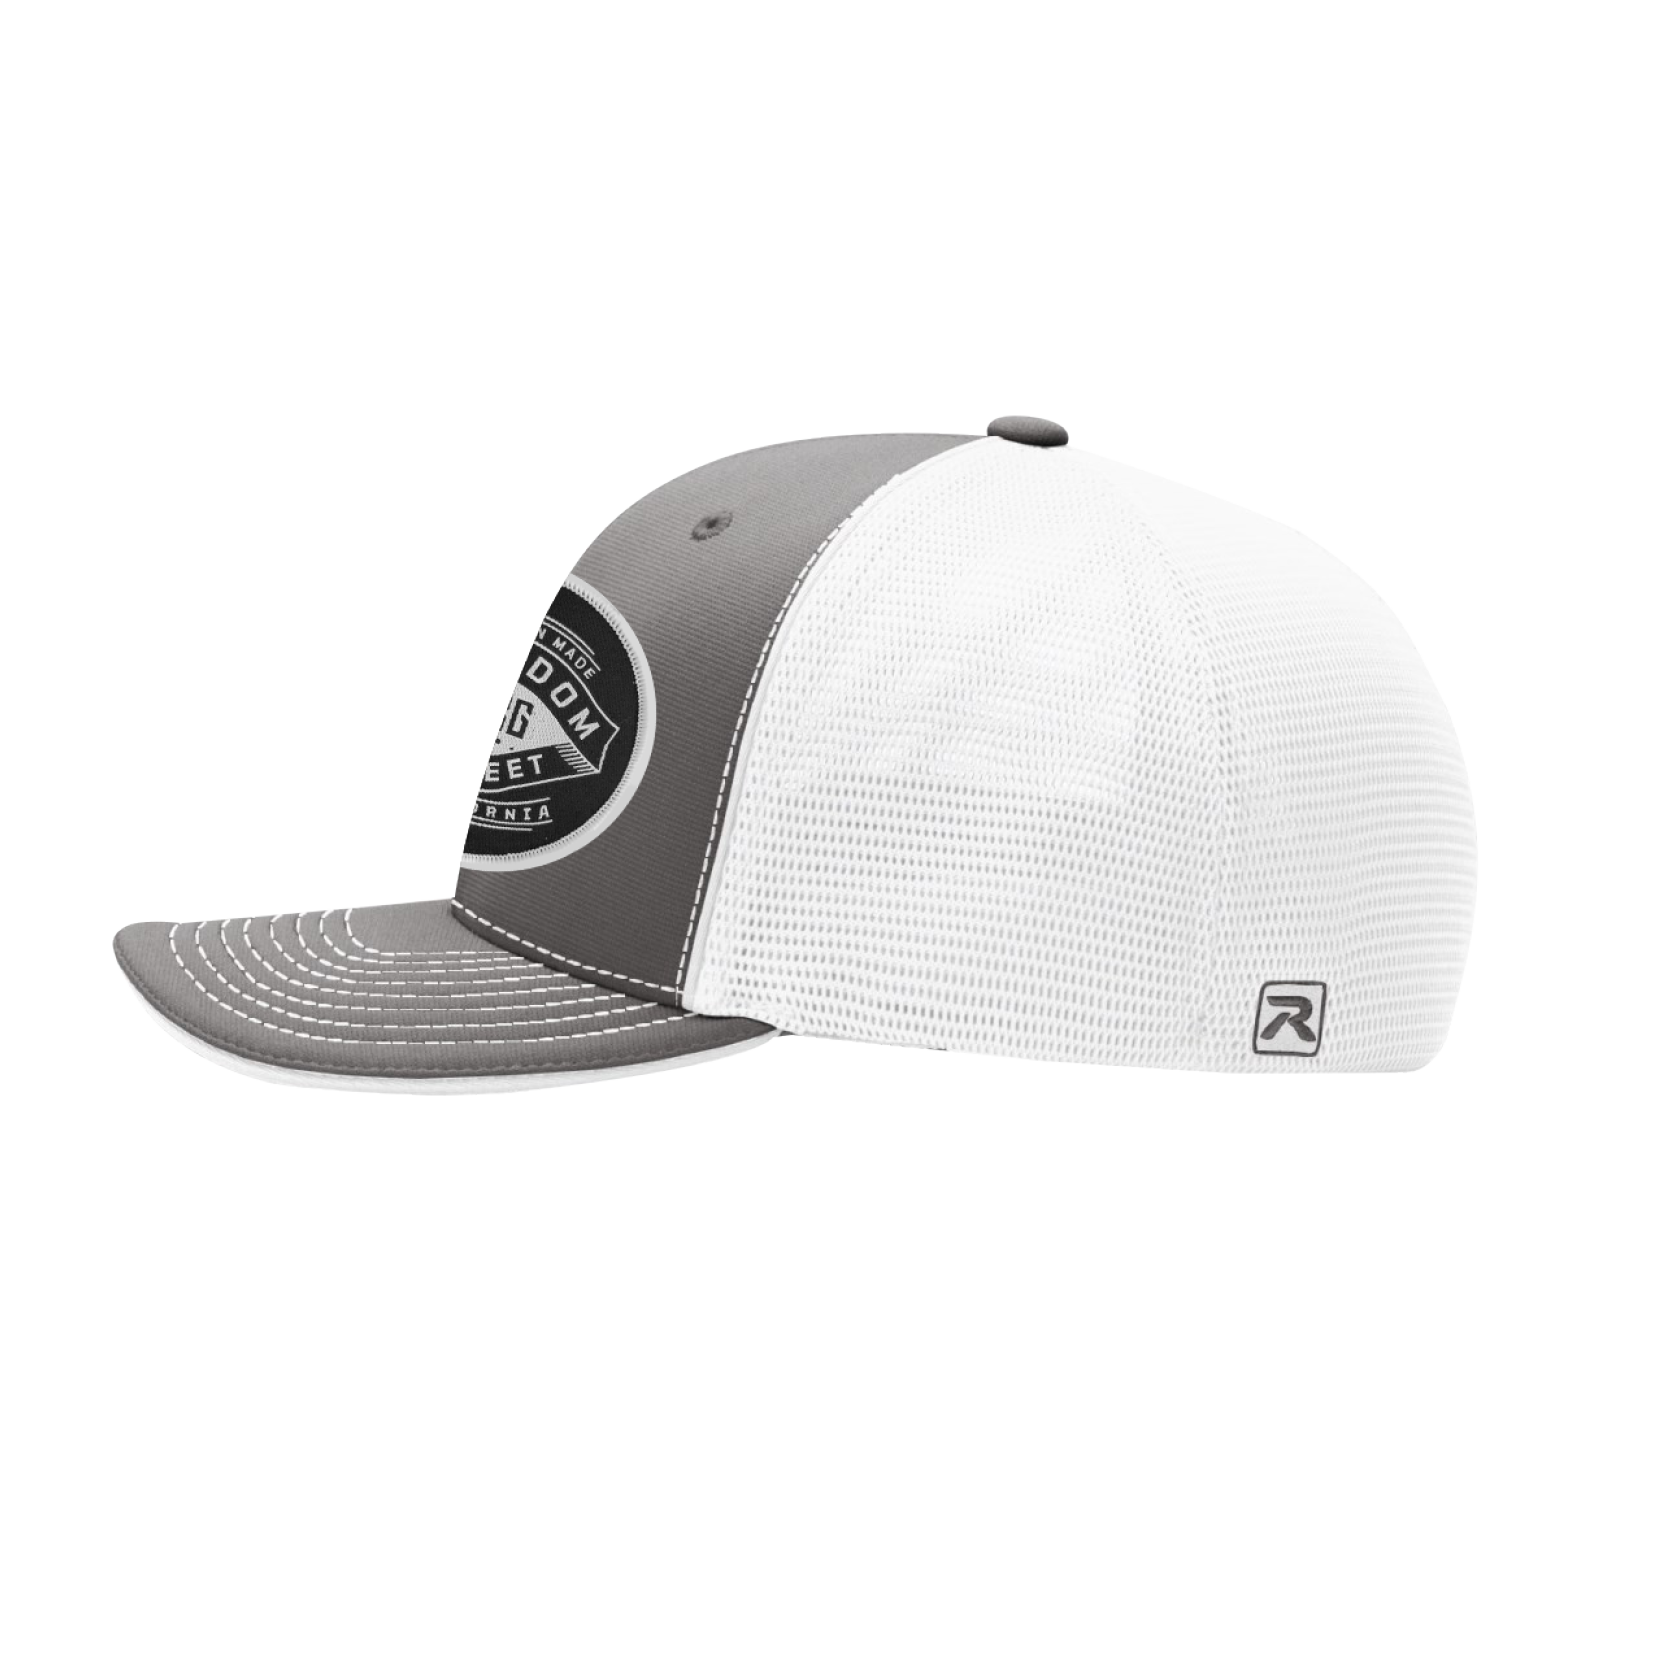 The Liberty Grey/White Flexfit Hat